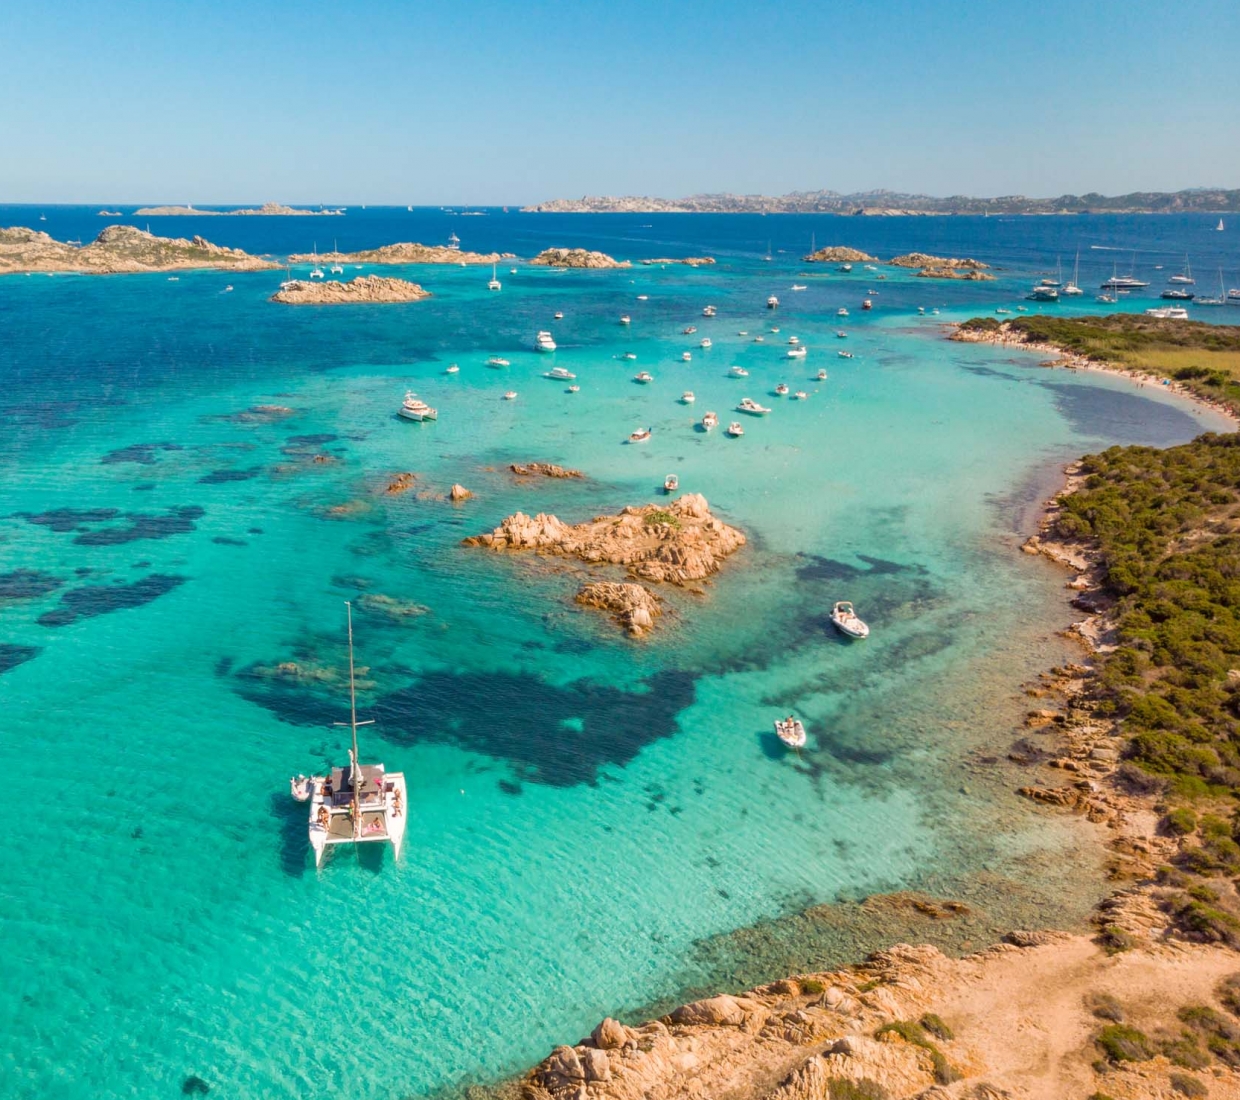 Seleção dos melhores e mais bonitos hotéis e casas de férias em Sardinia